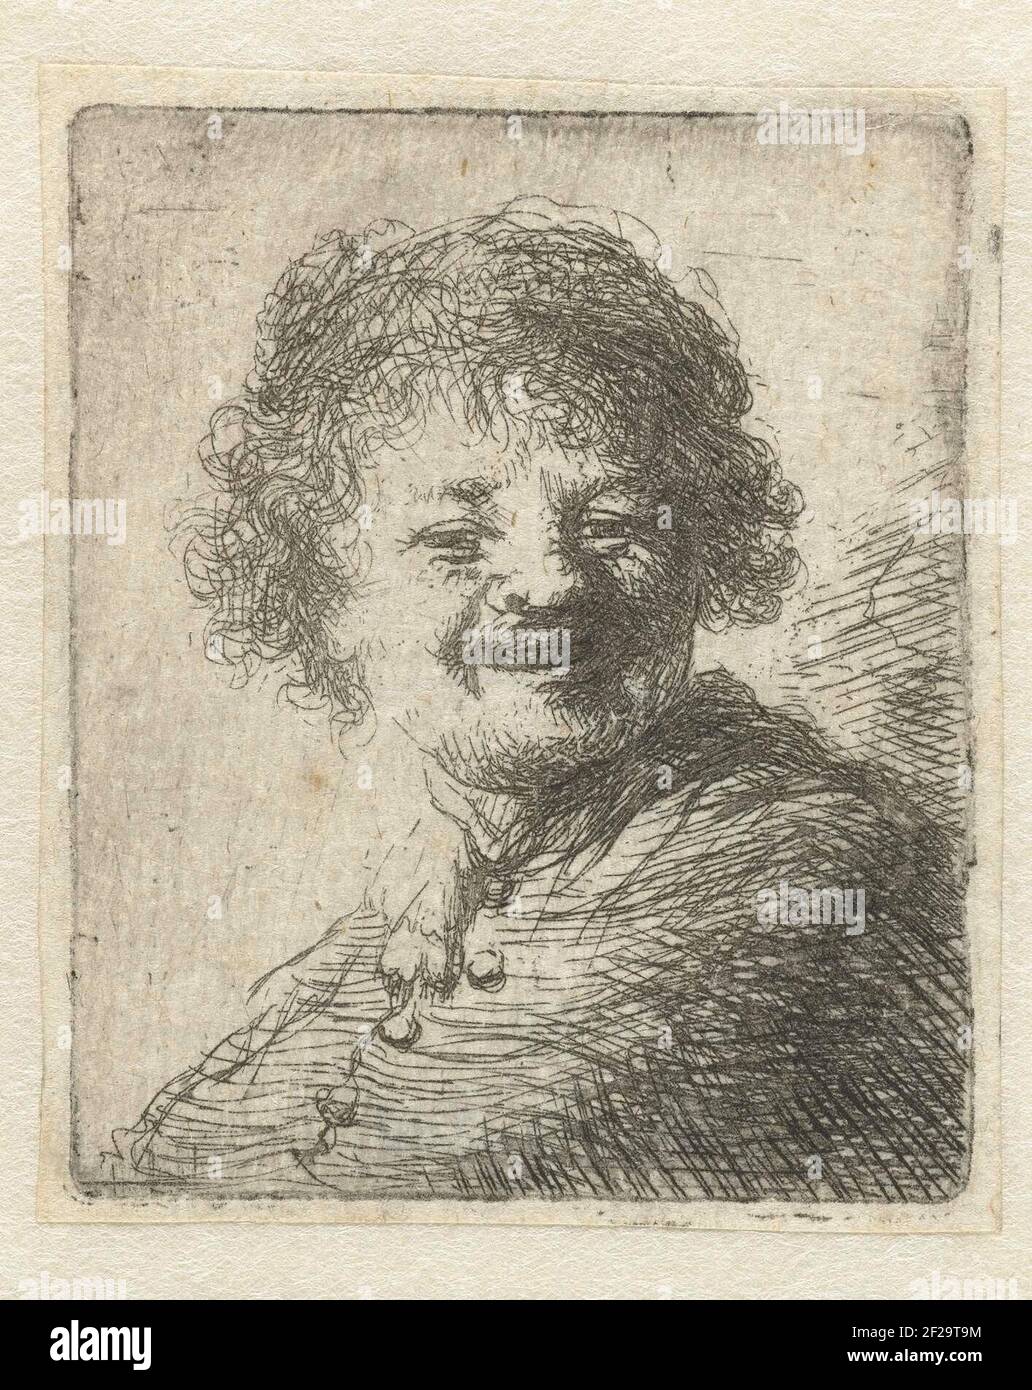 Lachend zelfportret met muts.Spiegelbild Kopie zum gleichnamigen Druck von Rembrandt. Stockfoto